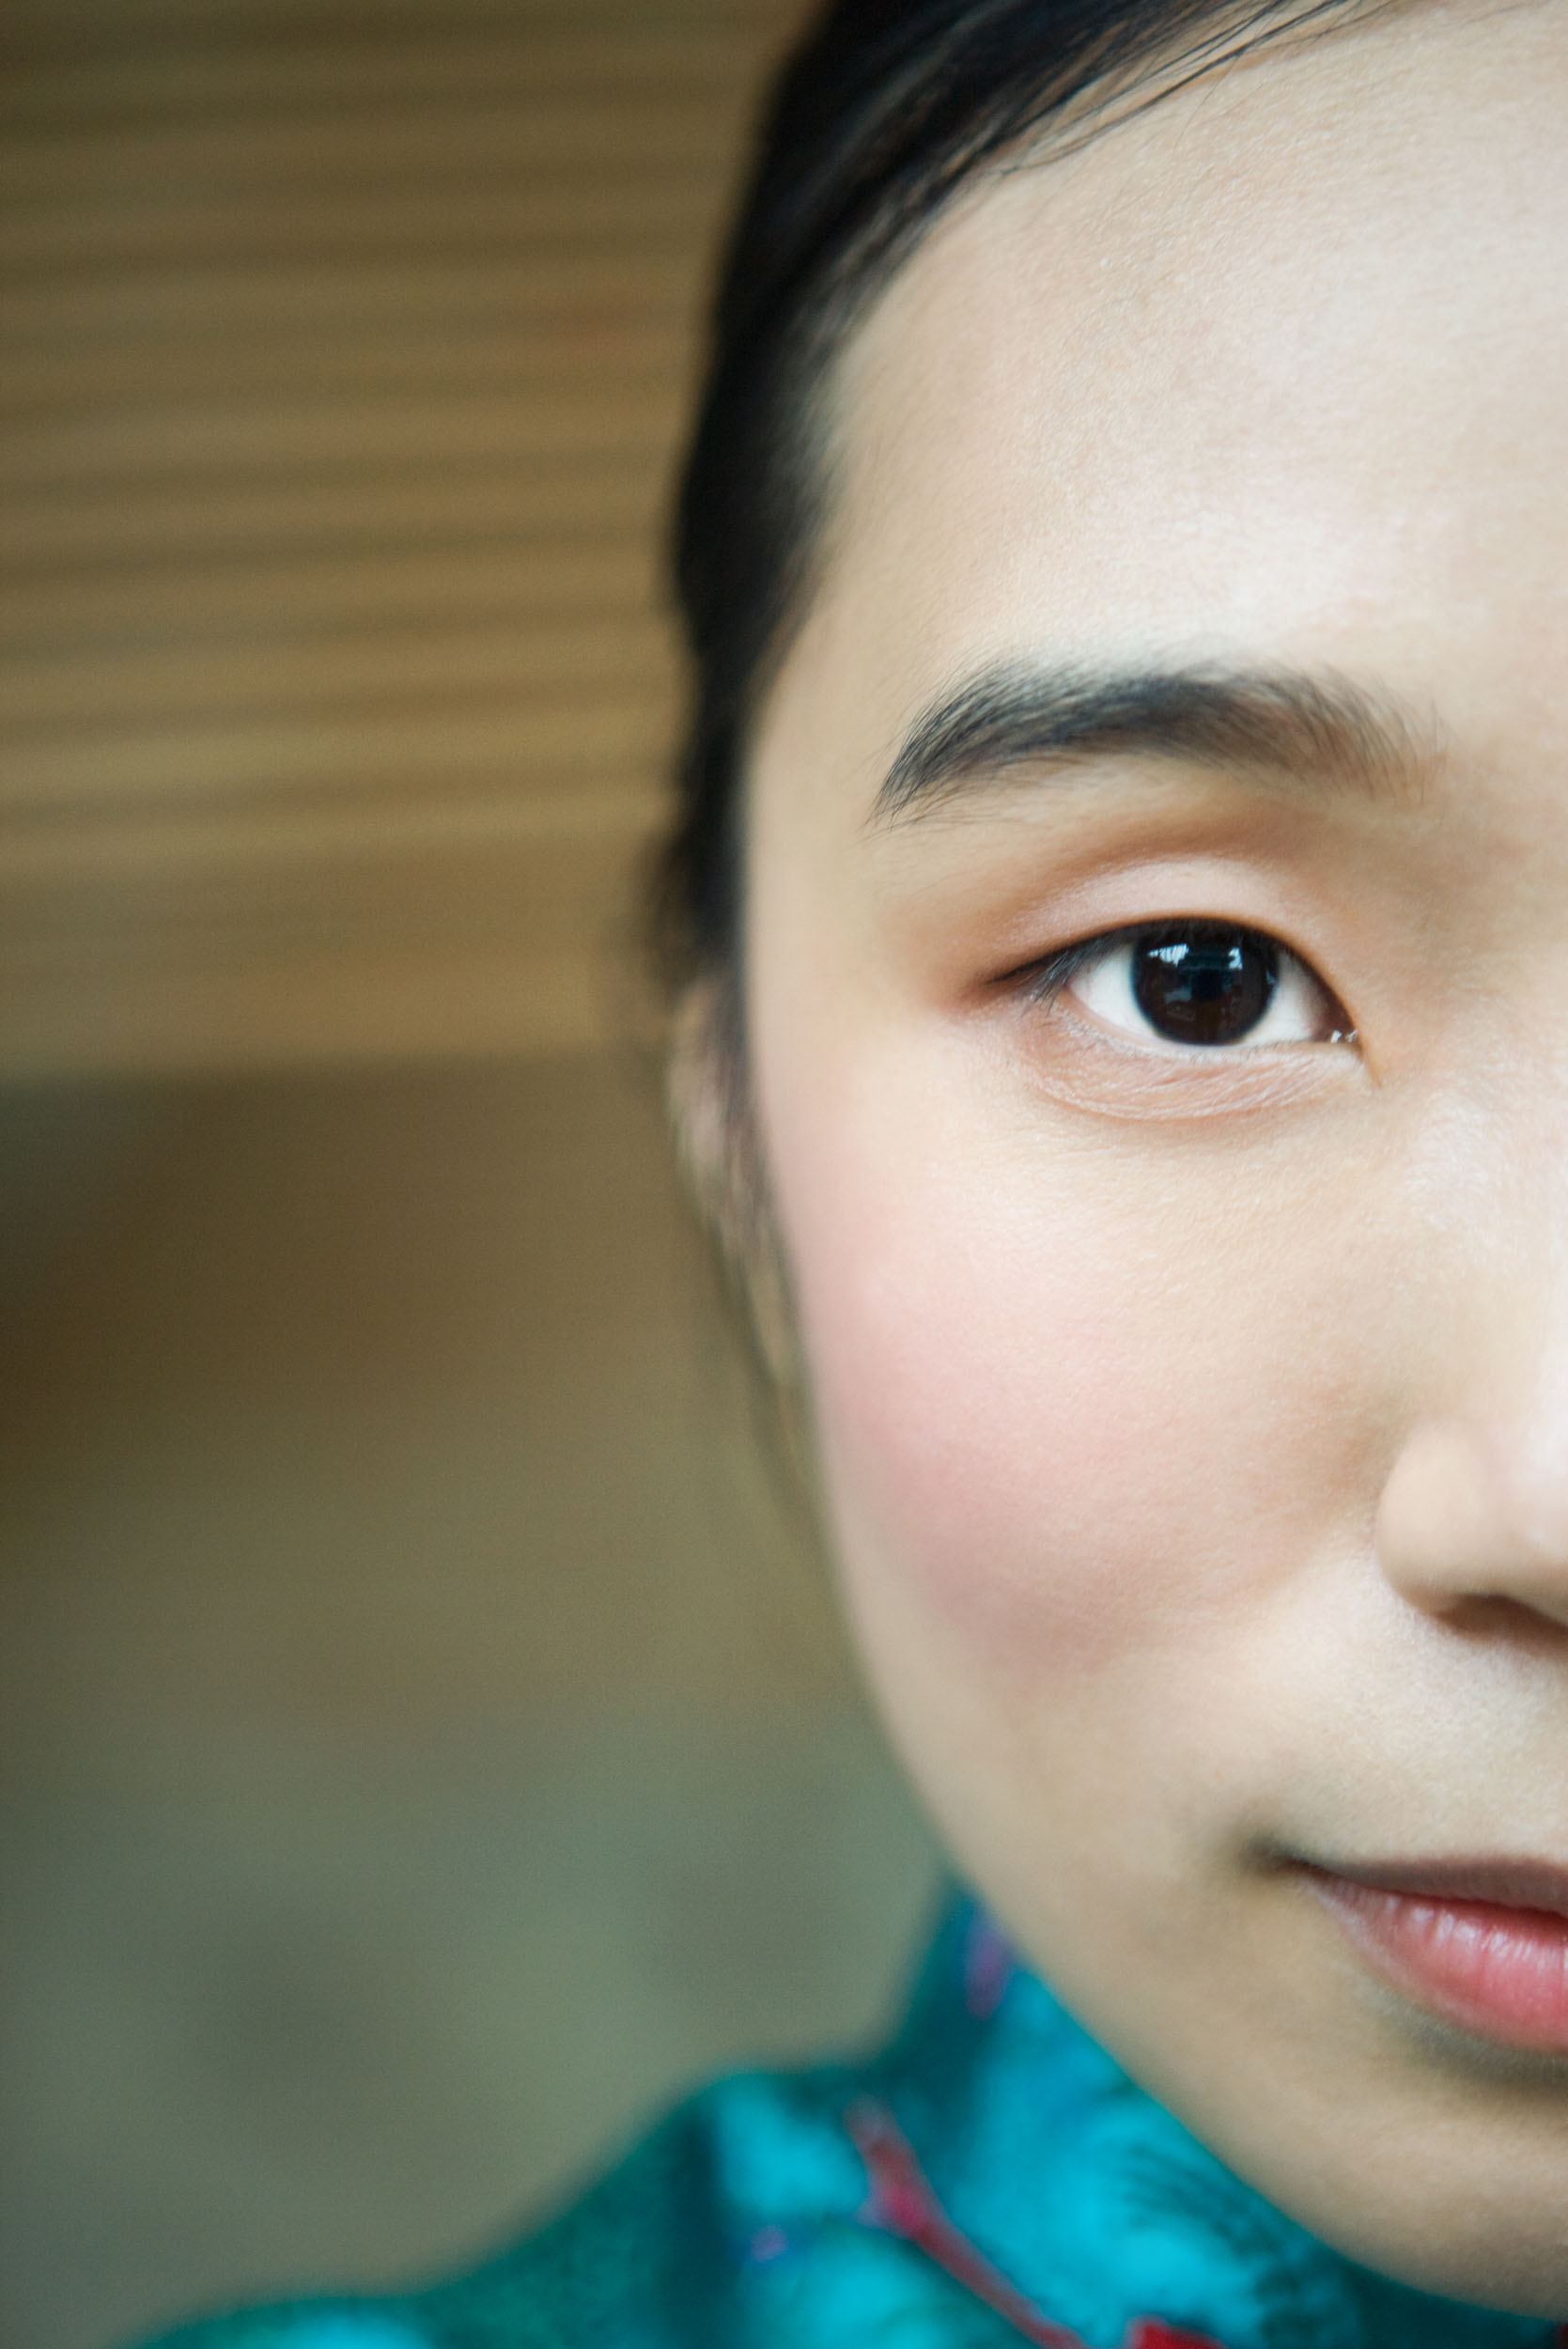 Portrait artistique d'un demi visage d'une femme asiatique. Photo de portrait en très gros plan réalisé en lumière naturelle.